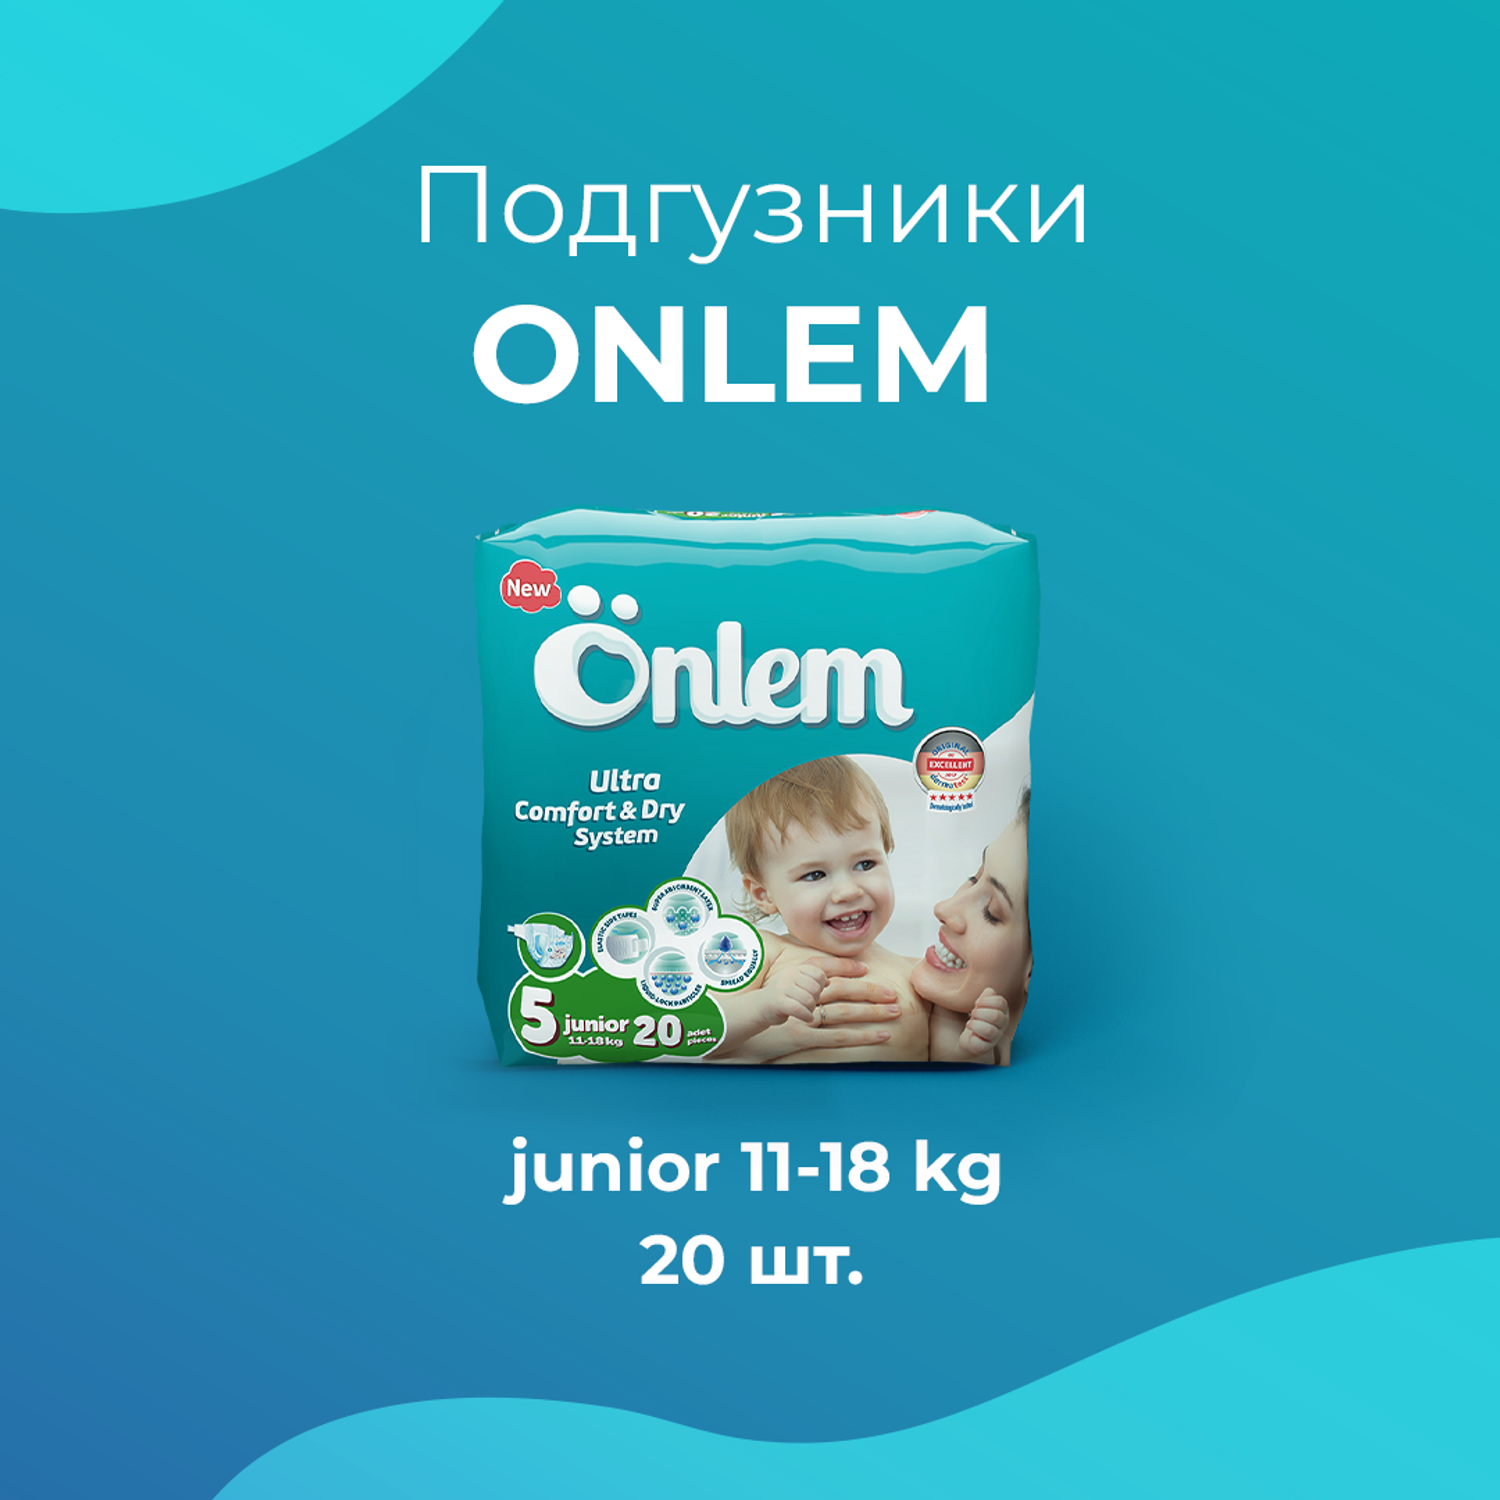 Детские подгузники Onlem Classik 5 (11-18 кг) advantage 20 шт в упаковке - фото 8